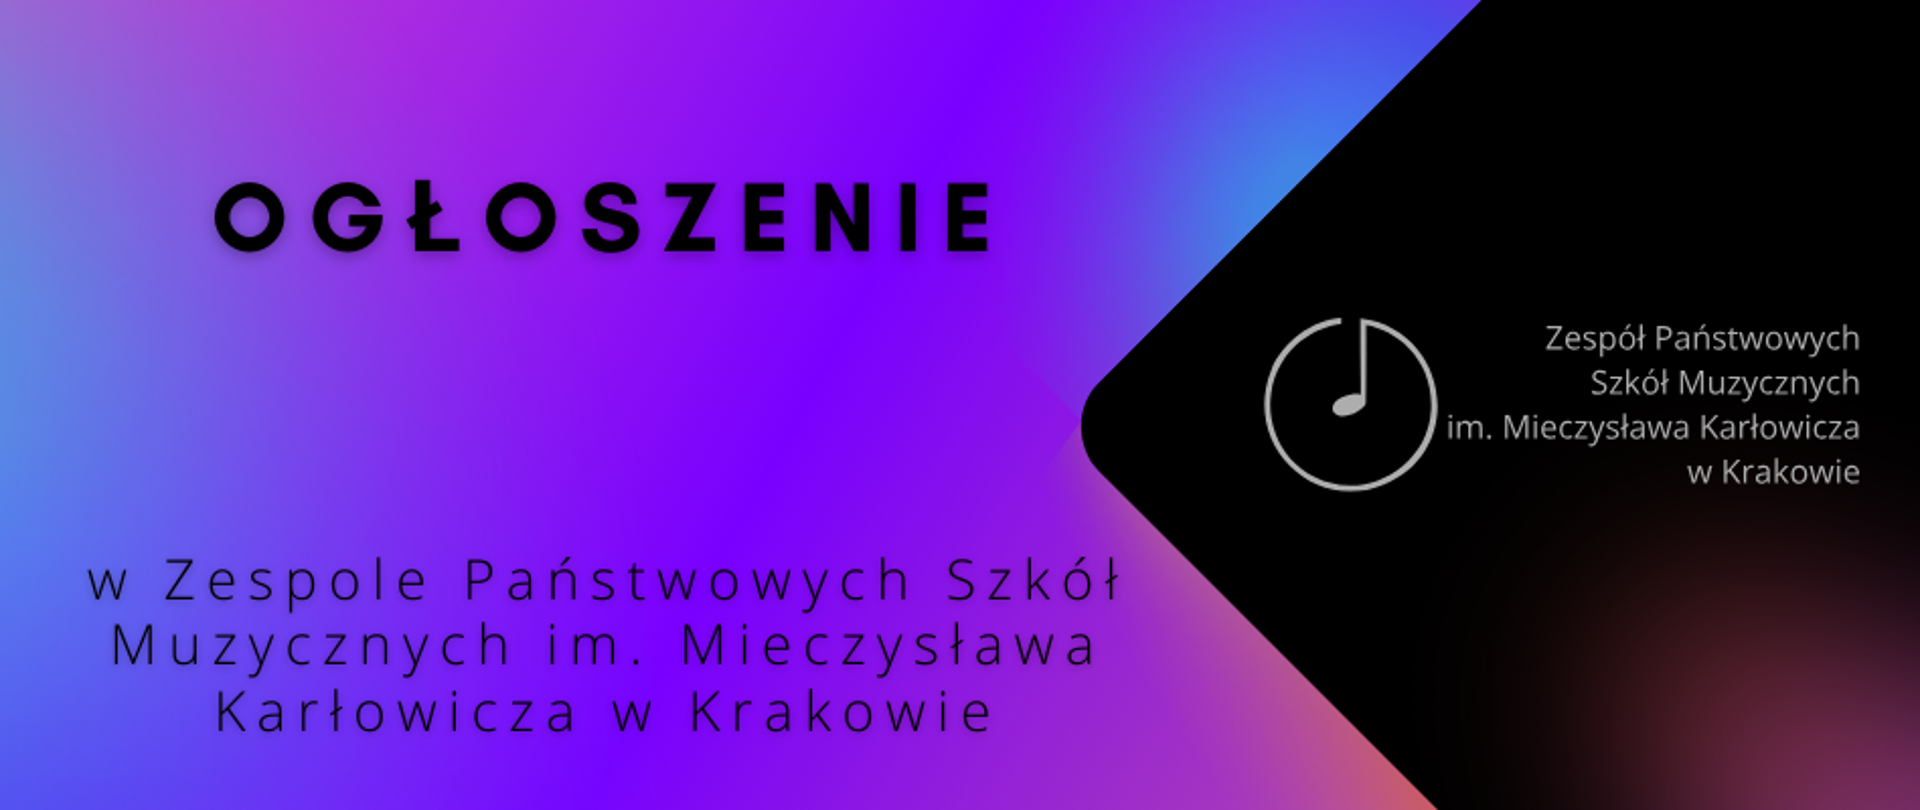 Baner z napisem ogłoszenia w Zespole Państwowych Szkół Muzycznych im. Mieczysława Karłowicza w Krakowie. W lewej części logo ZPSMuz